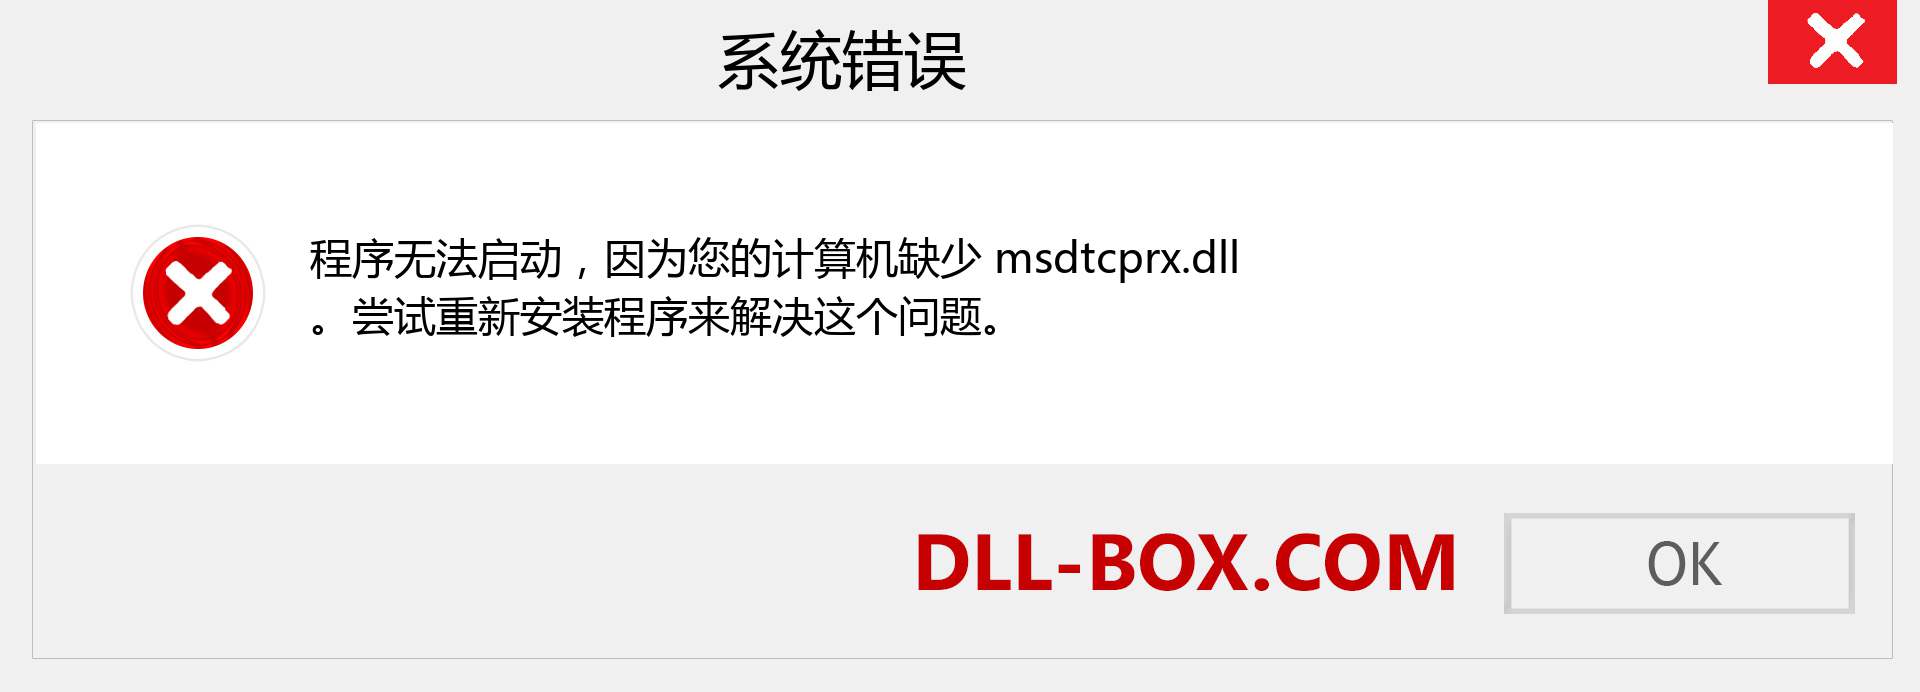 msdtcprx.dll 文件丢失？。 适用于 Windows 7、8、10 的下载 - 修复 Windows、照片、图像上的 msdtcprx dll 丢失错误